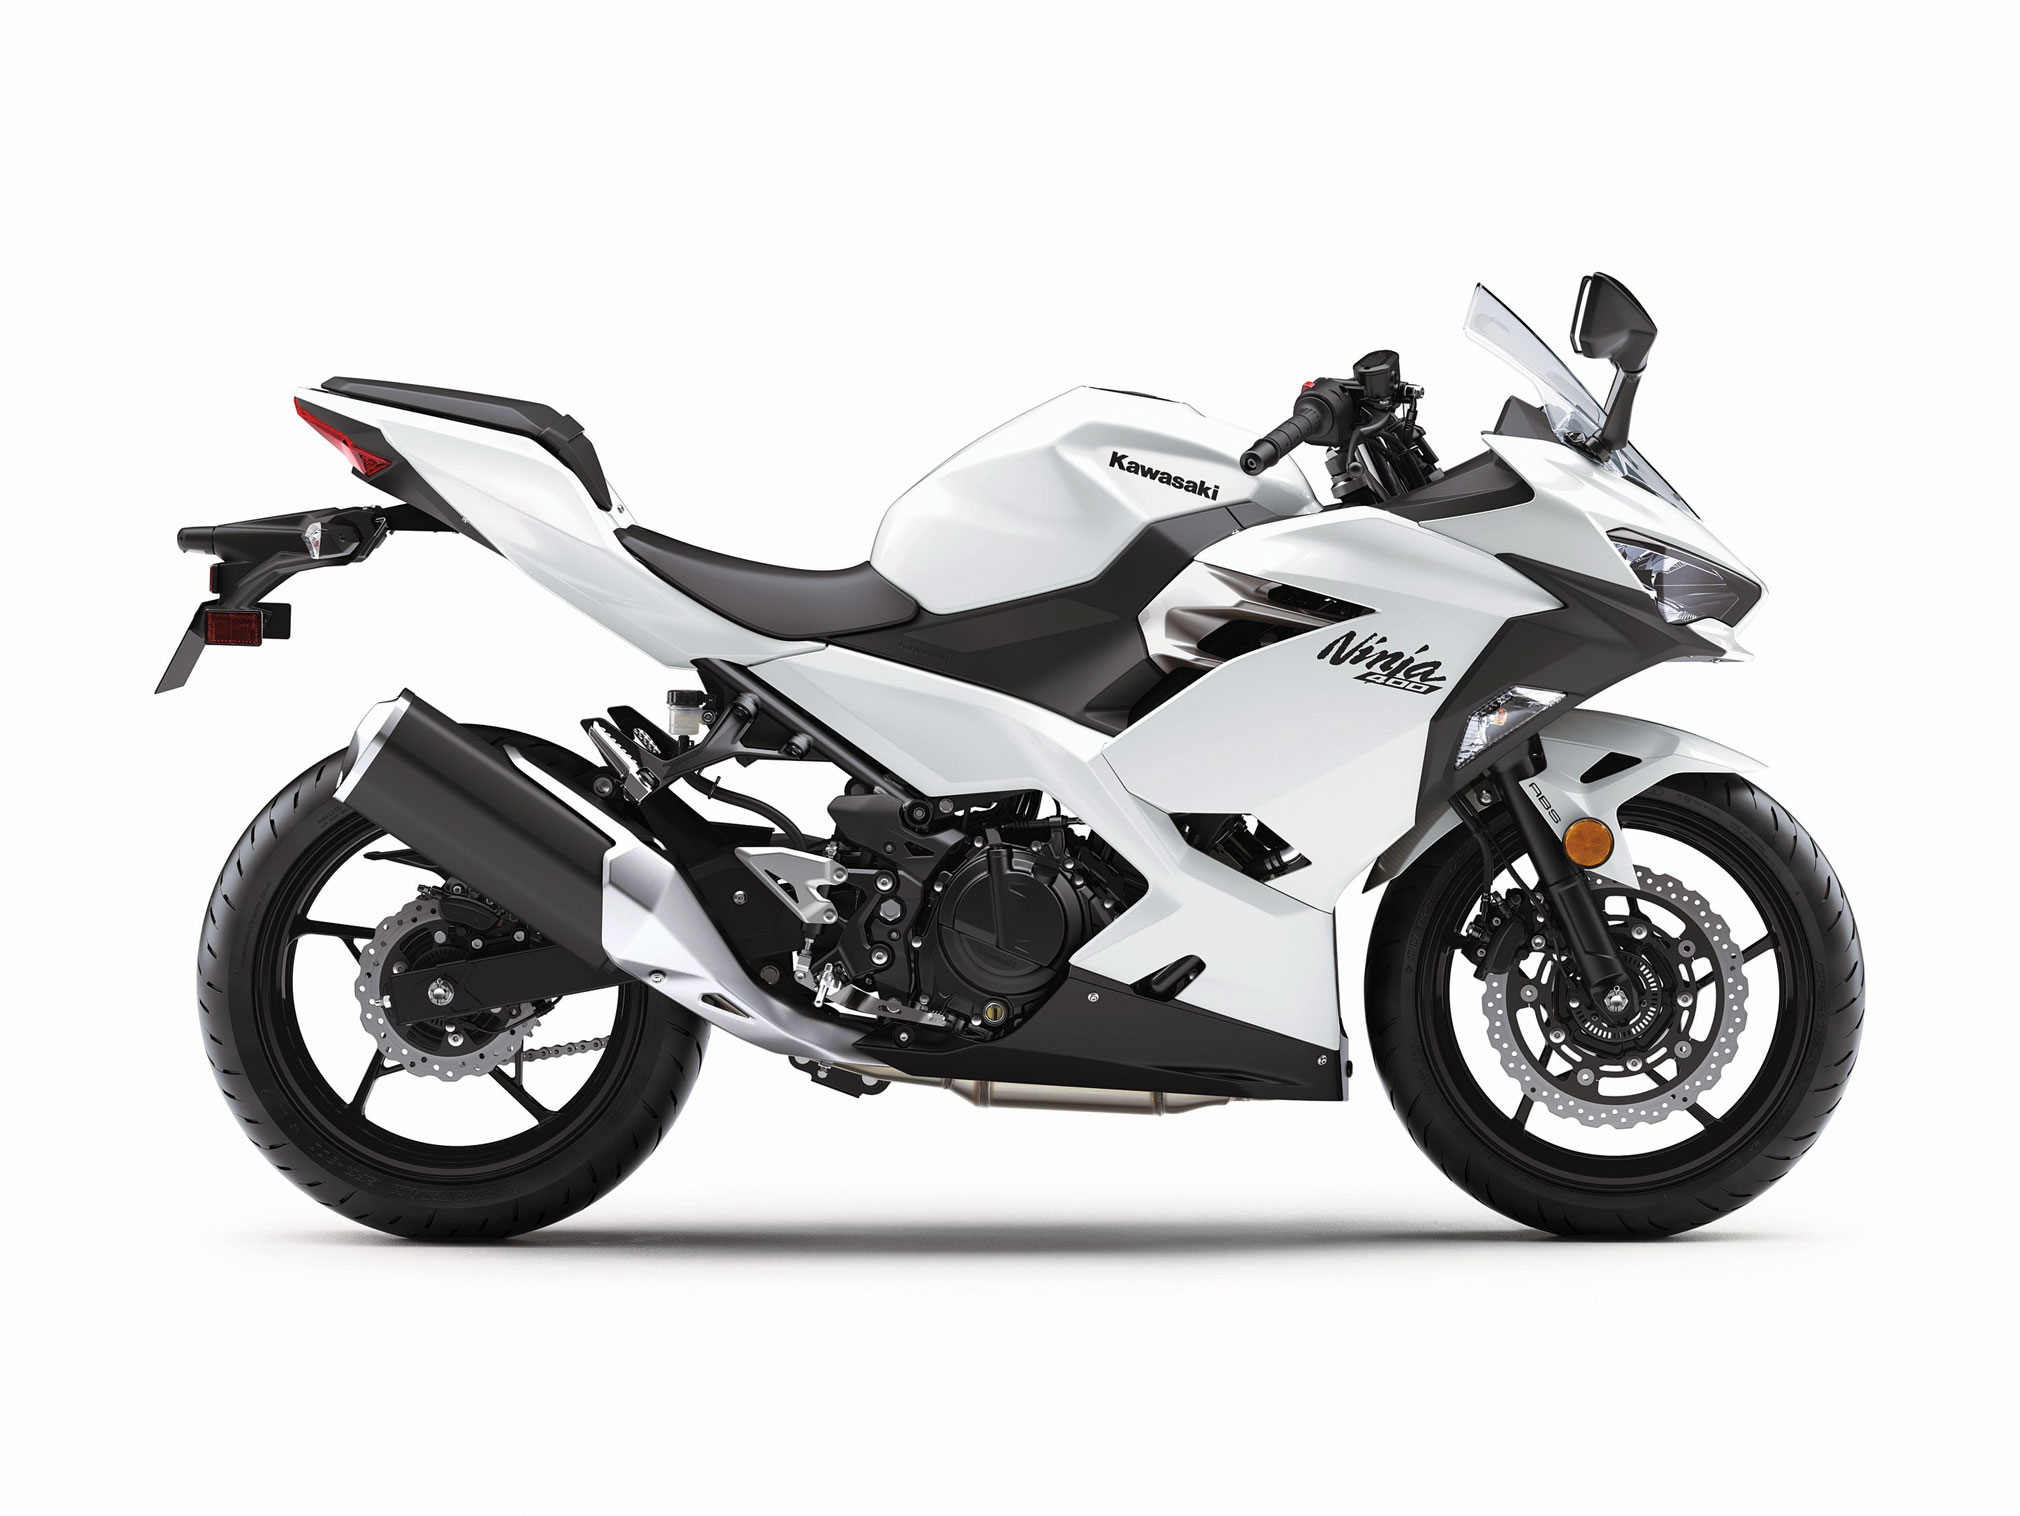 2020 Kawasaki 400 Guide • Motorcycle